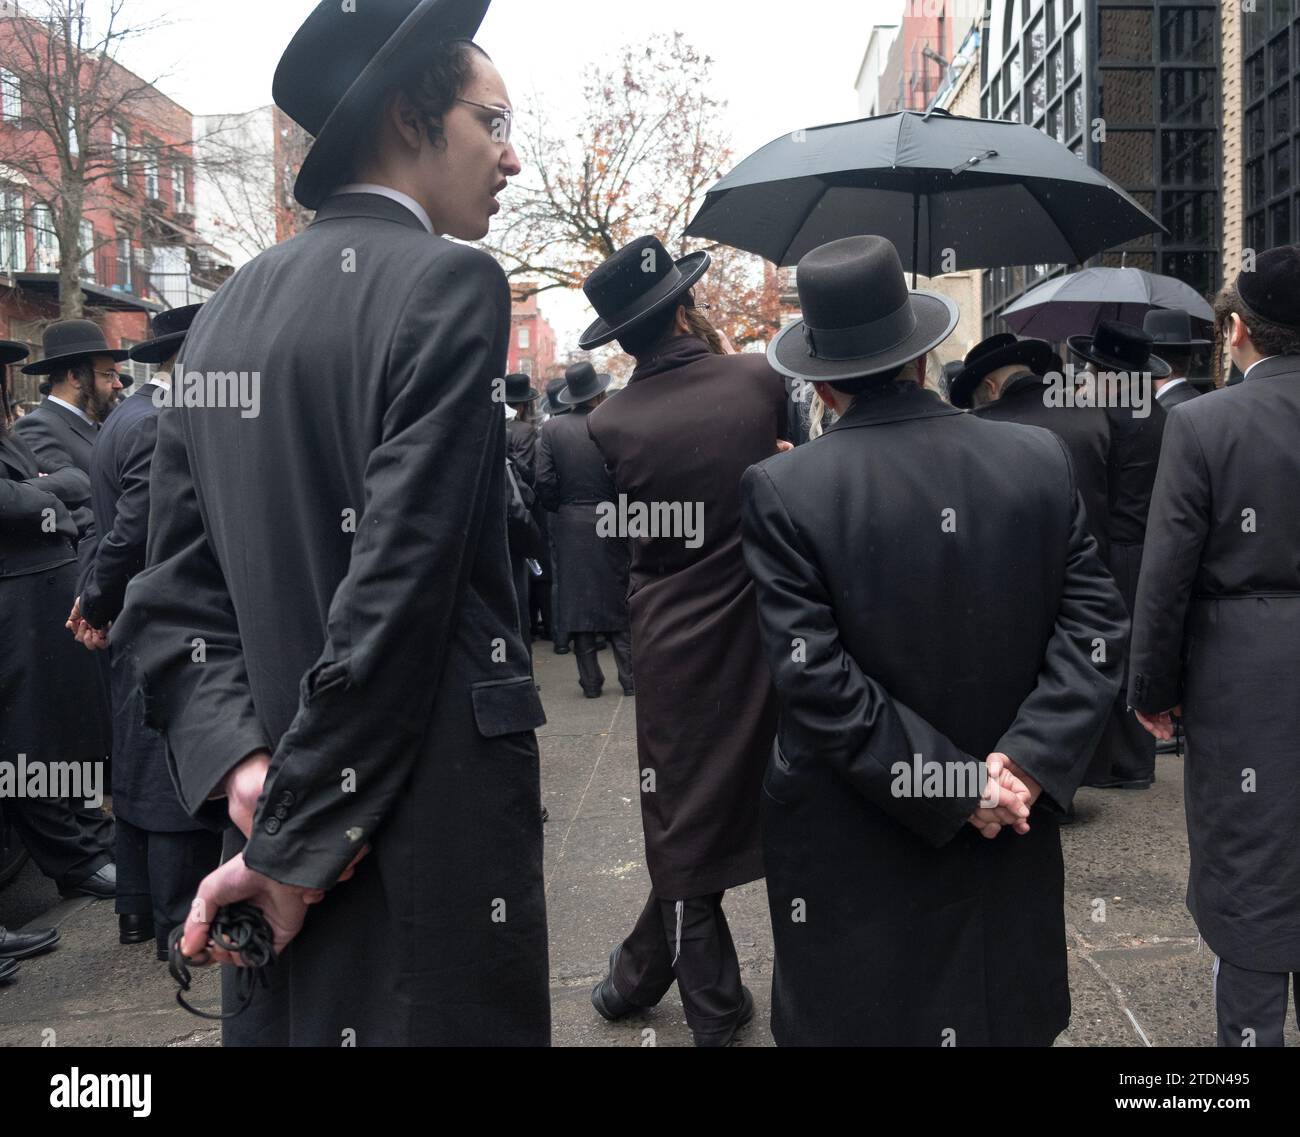 Orthodoxe jüdische Männer in schwarz gekleideter Kleidung nehmen an einer Beerdigung eines chassidischen Rabbiners Teil und hören sich eine Trauerfeier an. In Brooklyn, New York. Stockfoto